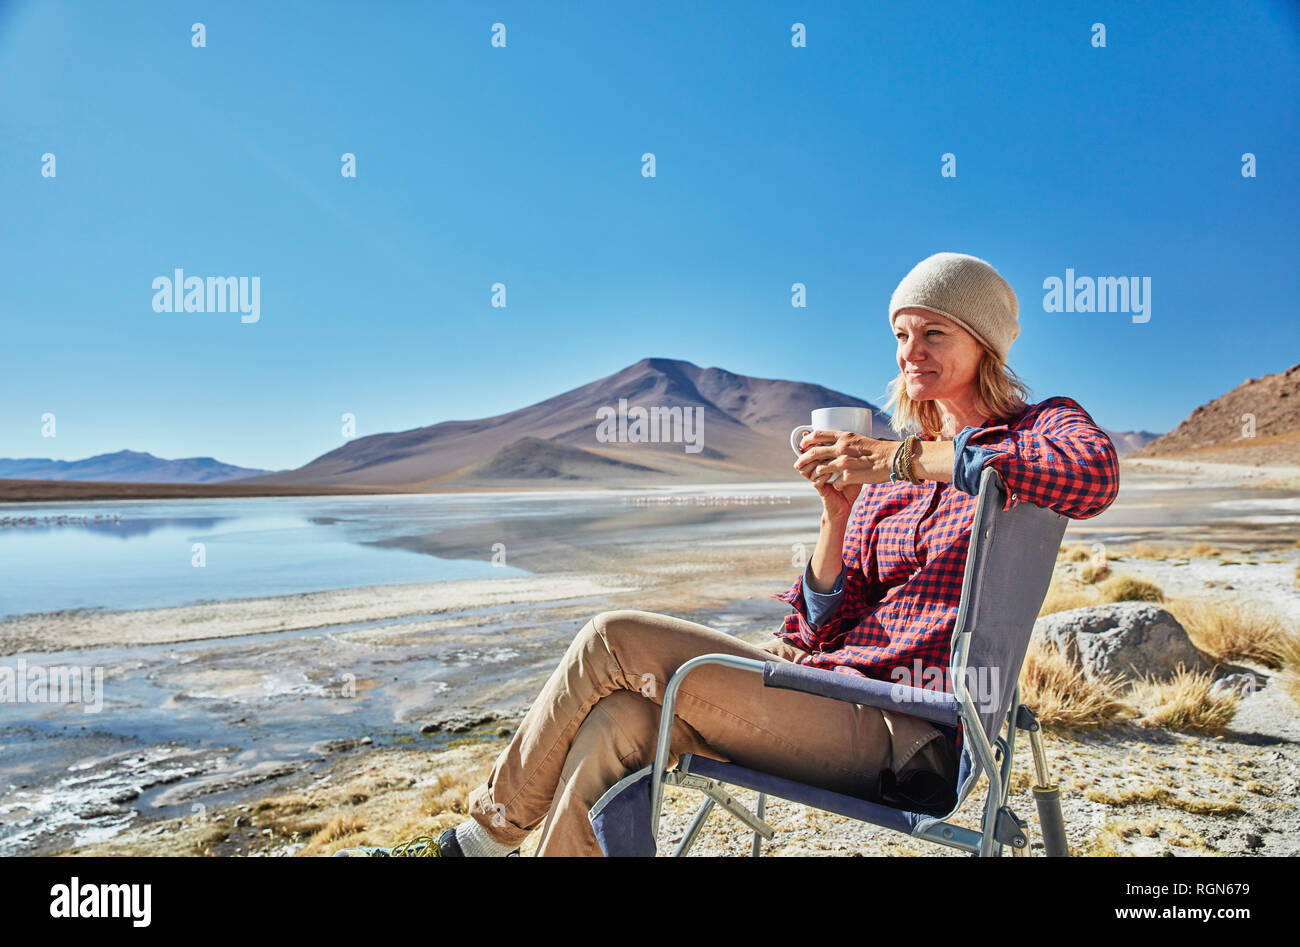 Bolivien, Laguna Colorada, Frau sitzt auf Camping Stuhl am Seeufer das Trinken aus dem Becher Stockfoto